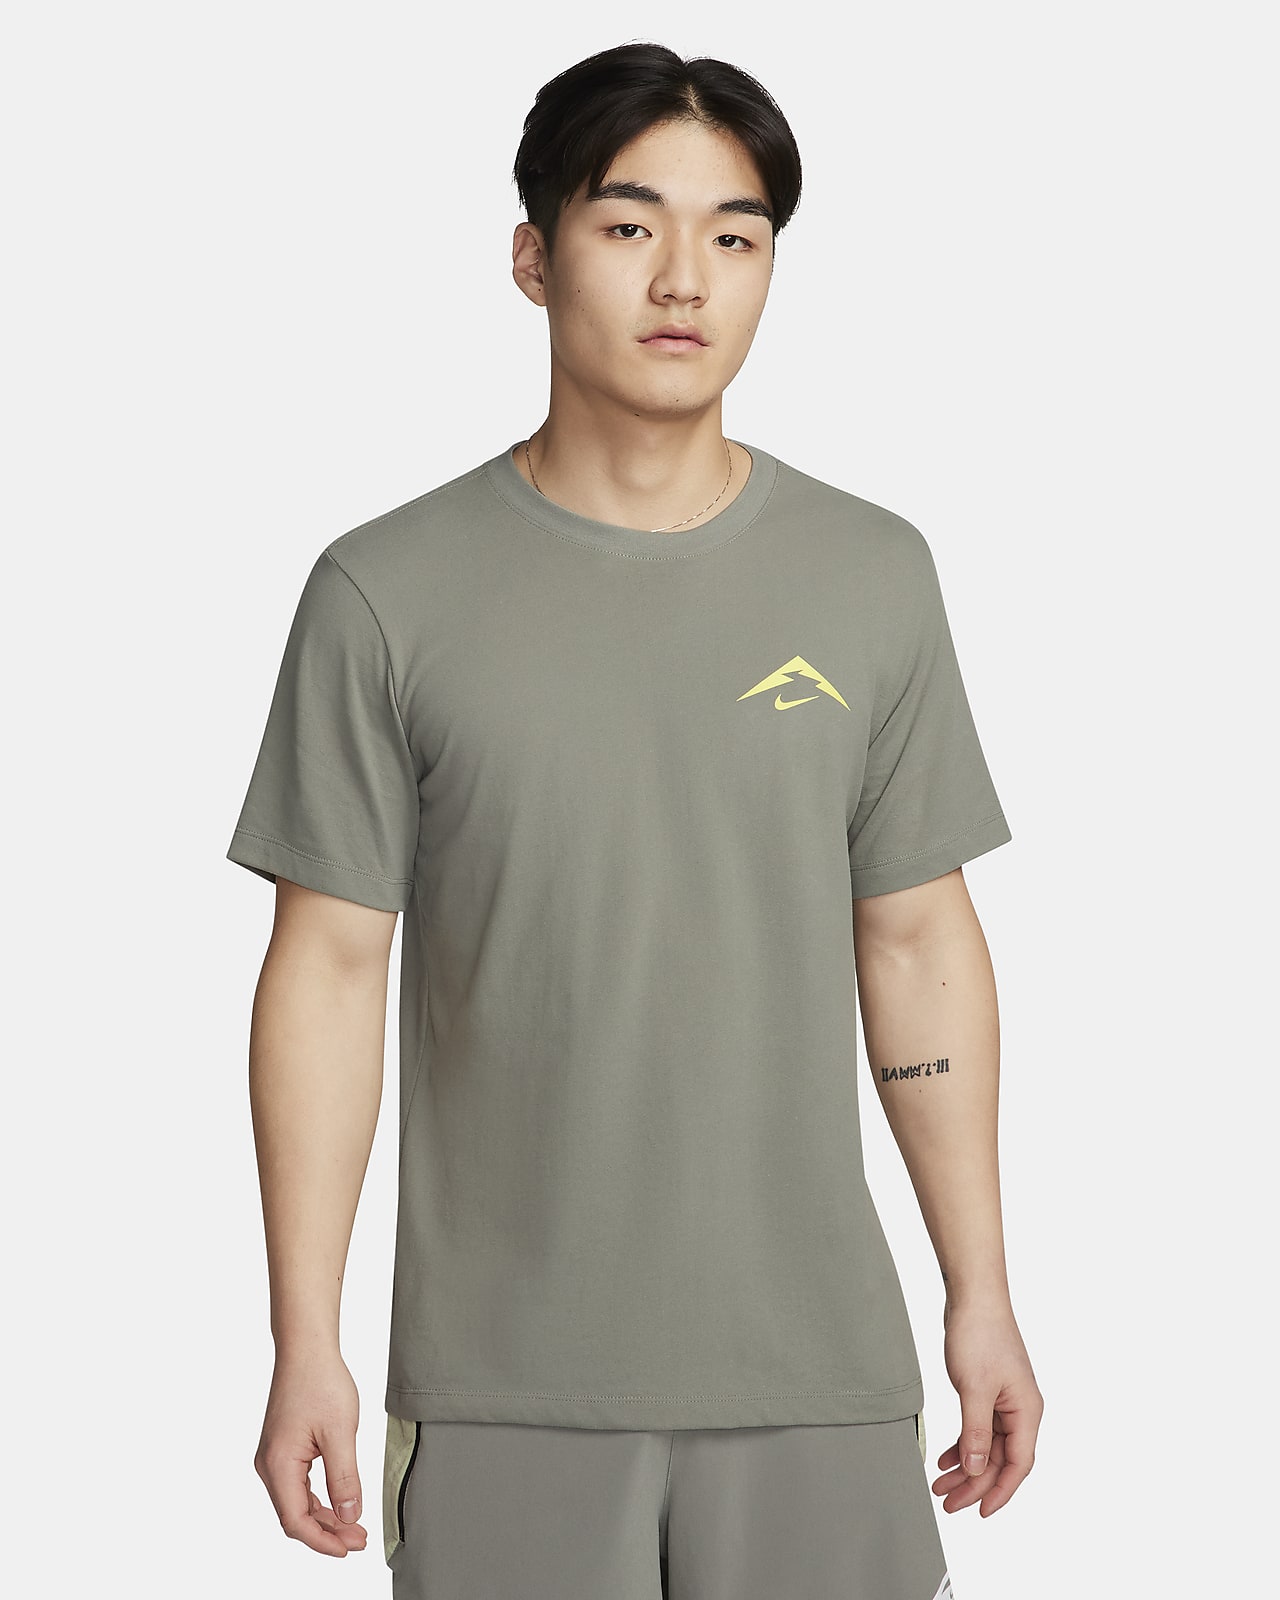 ナイキ トレイル メンズ Dri-FIT トレイル ランニング Tシャツ